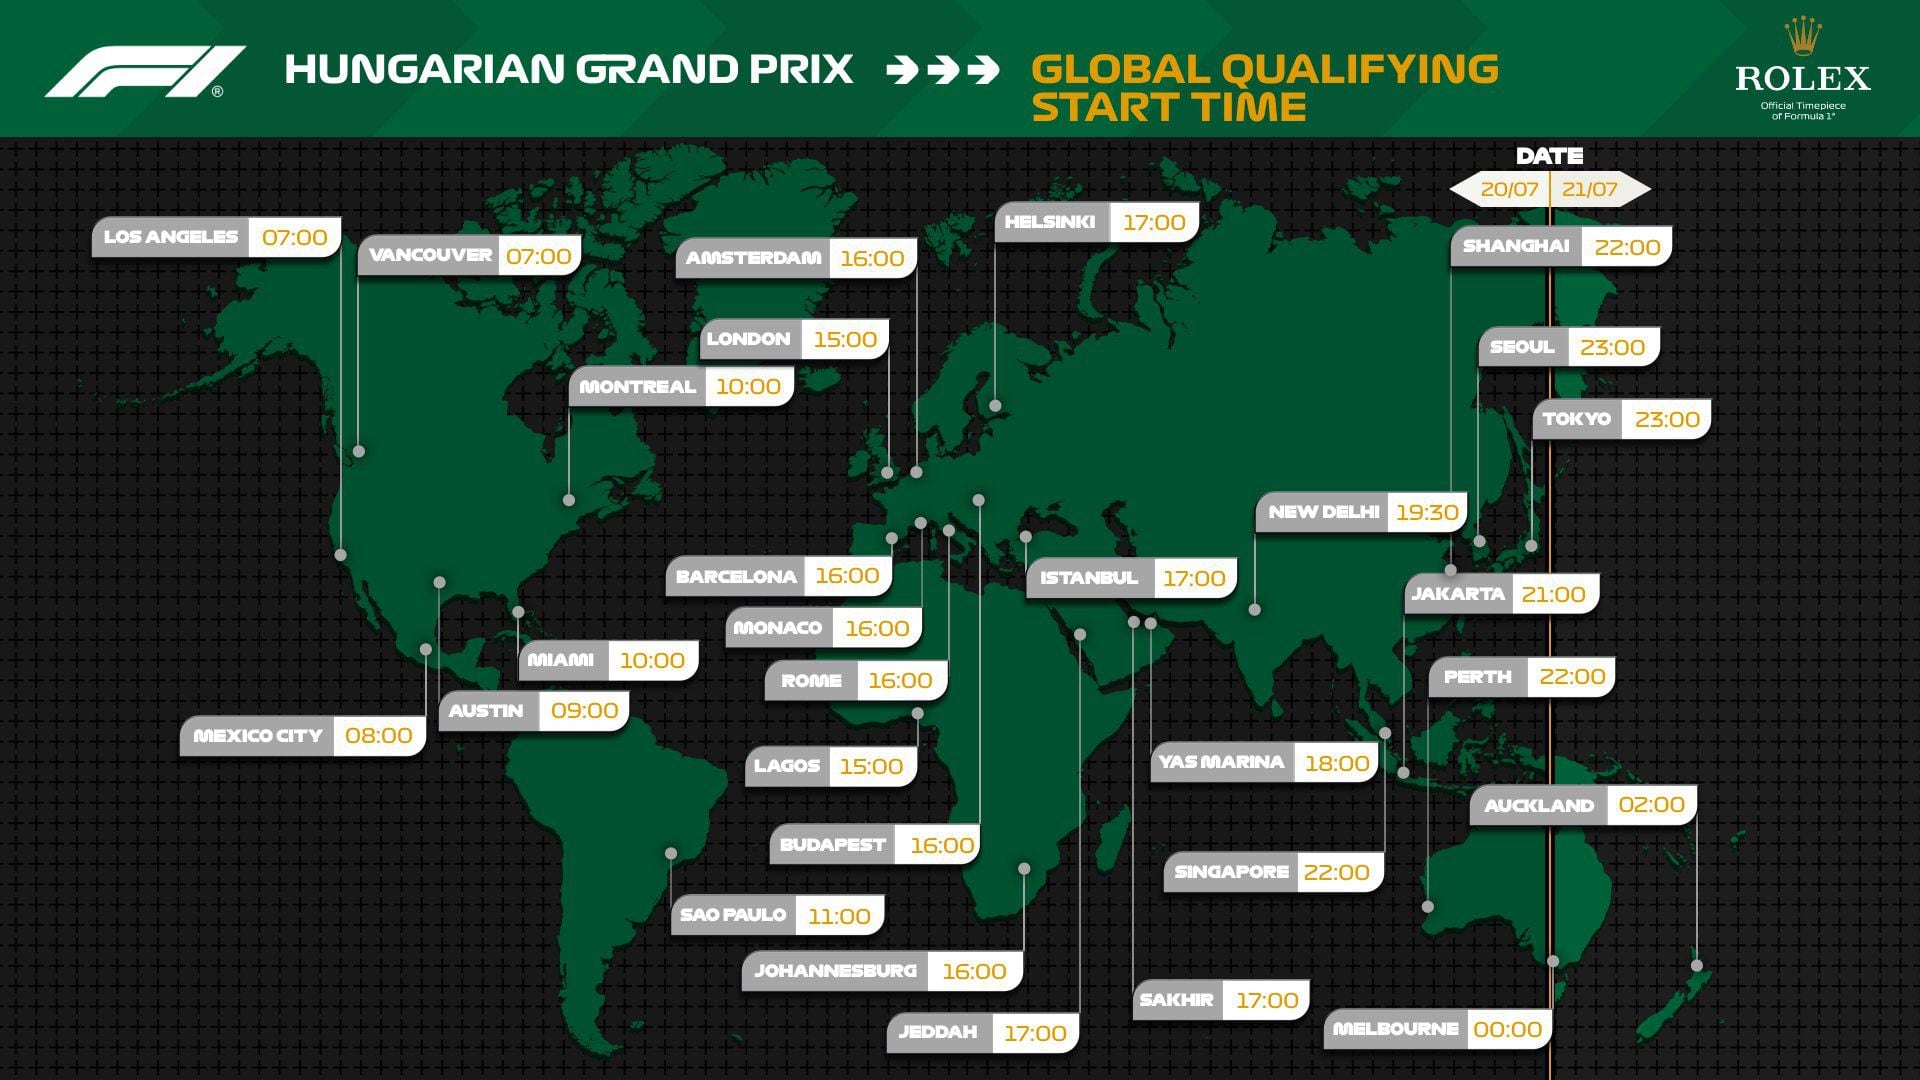 Estos son los horarios alrededor del mundo para ver la clasificación del GP de Hungría. (Foto: Fórmula 1)